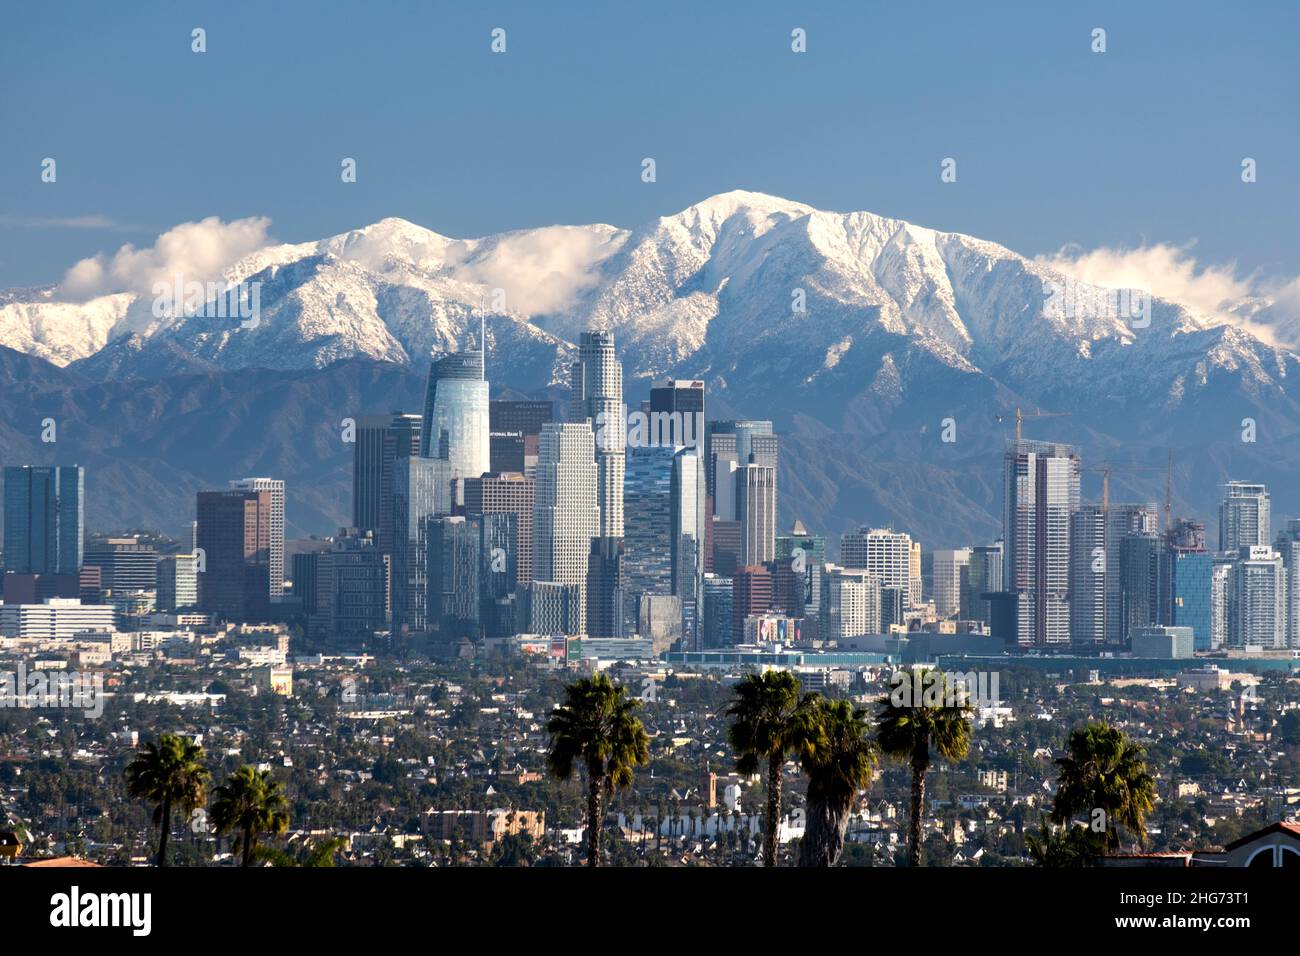 Skyline der Innenstadt von Los Angeles an einem klaren Tag mit den San Gabriel Mountains und Mt. Baldy mit Schnee bedeckt Stockfoto